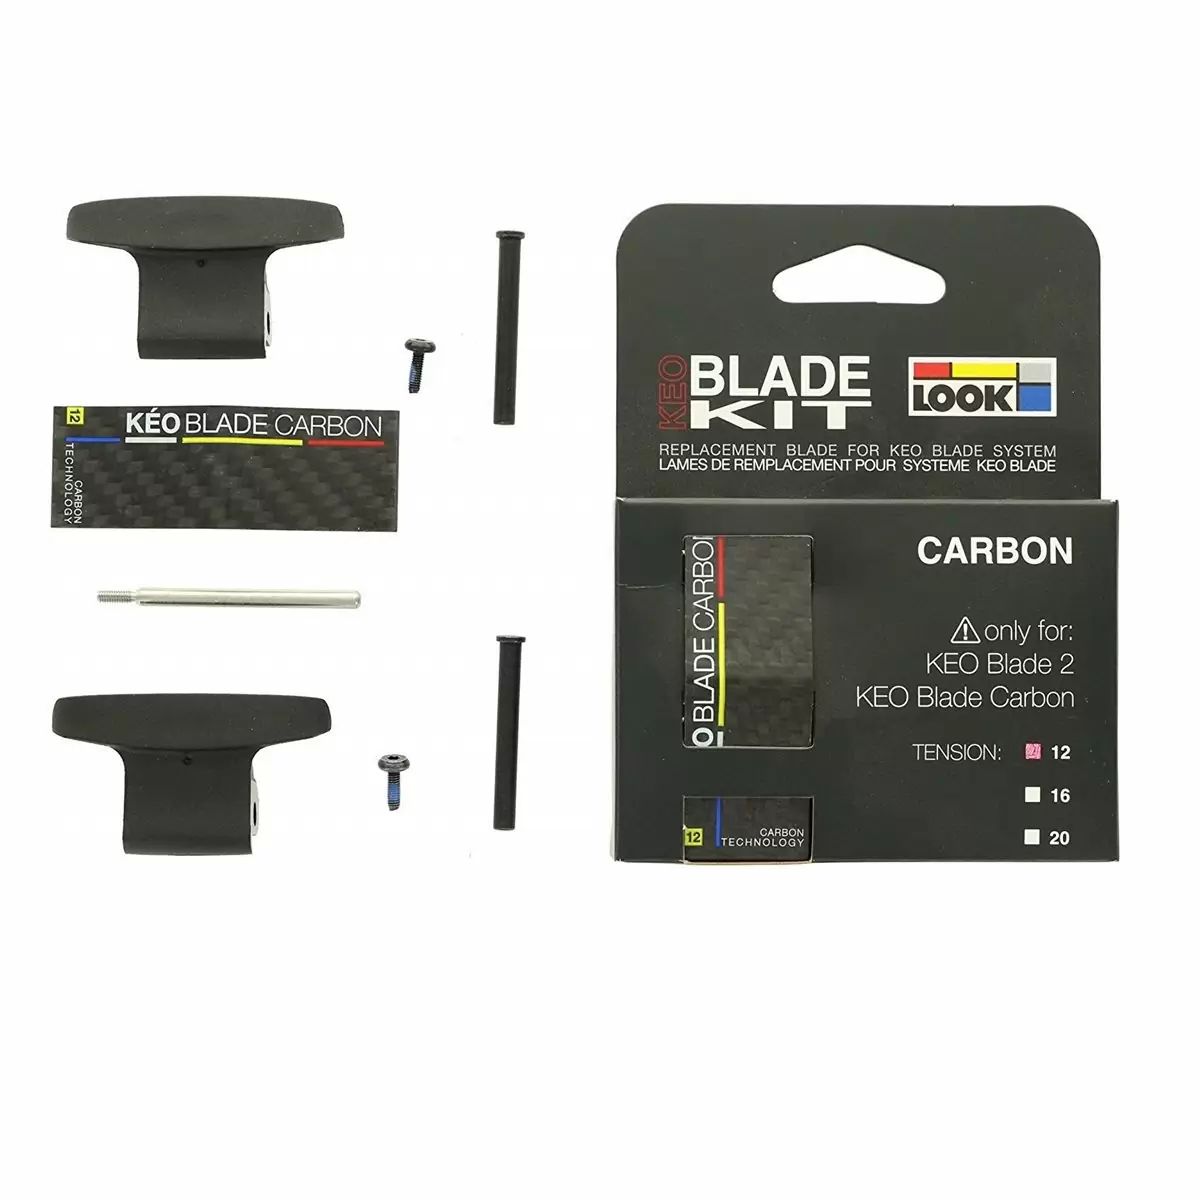 Blade kit Keo Blade Carbon 12 - image